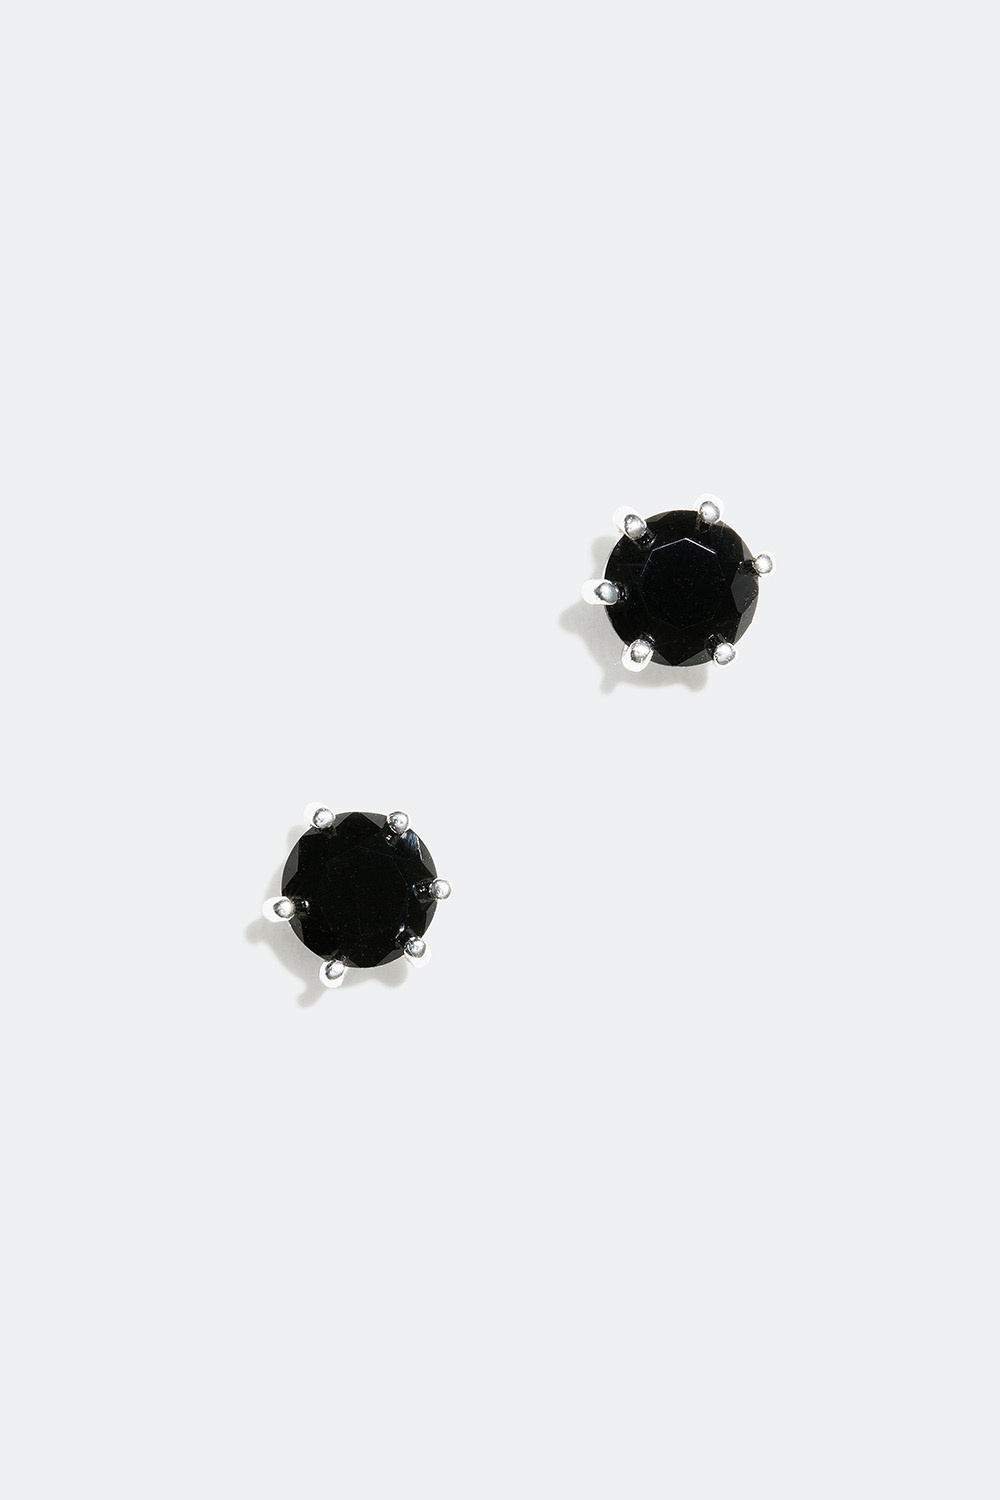 Pienet mustat nappikorvakorut aitoa hopeaa, 0,5 cm